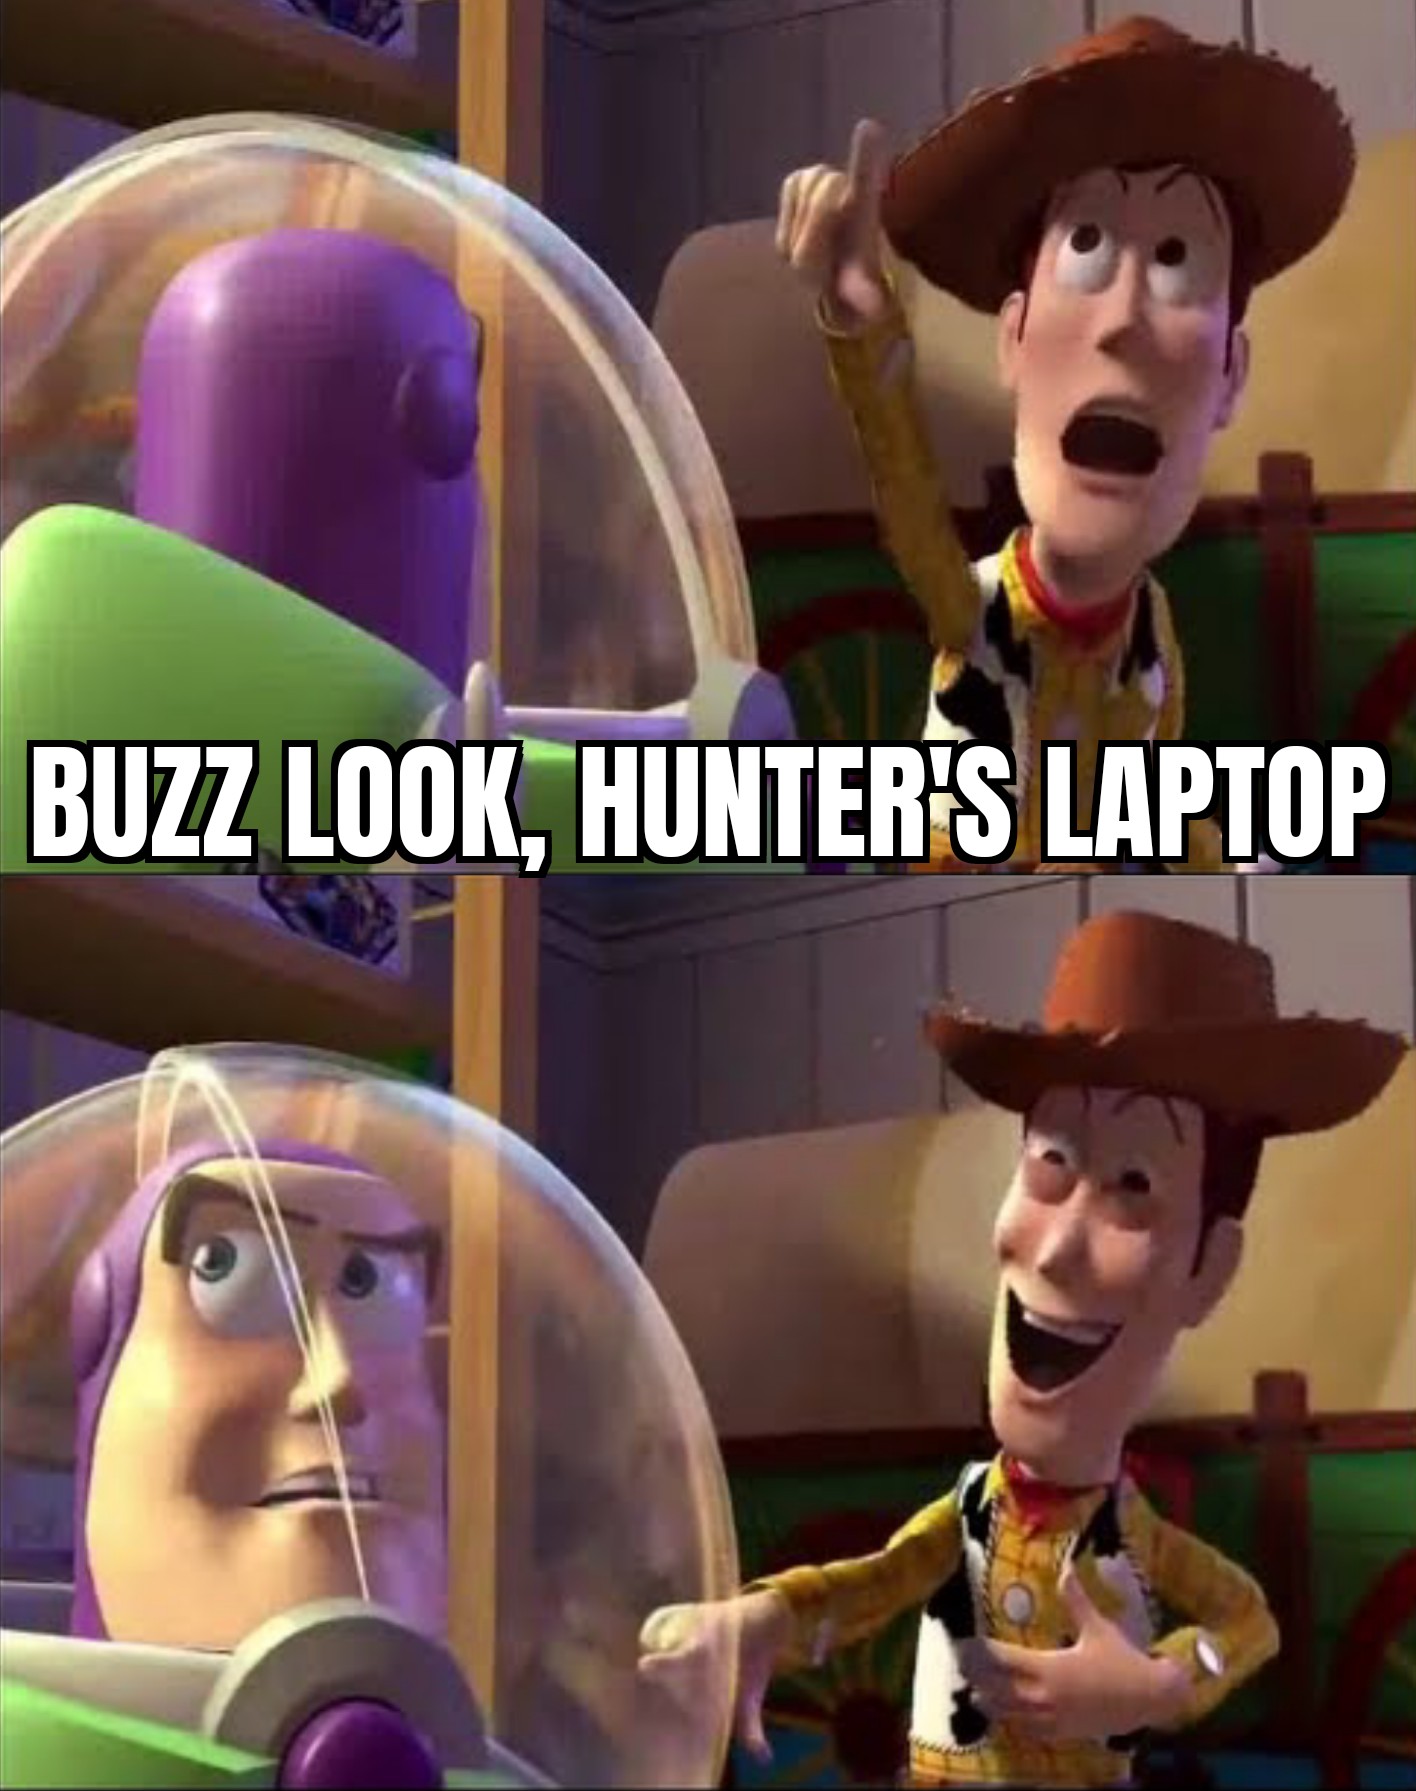 Buzz look, an alien!